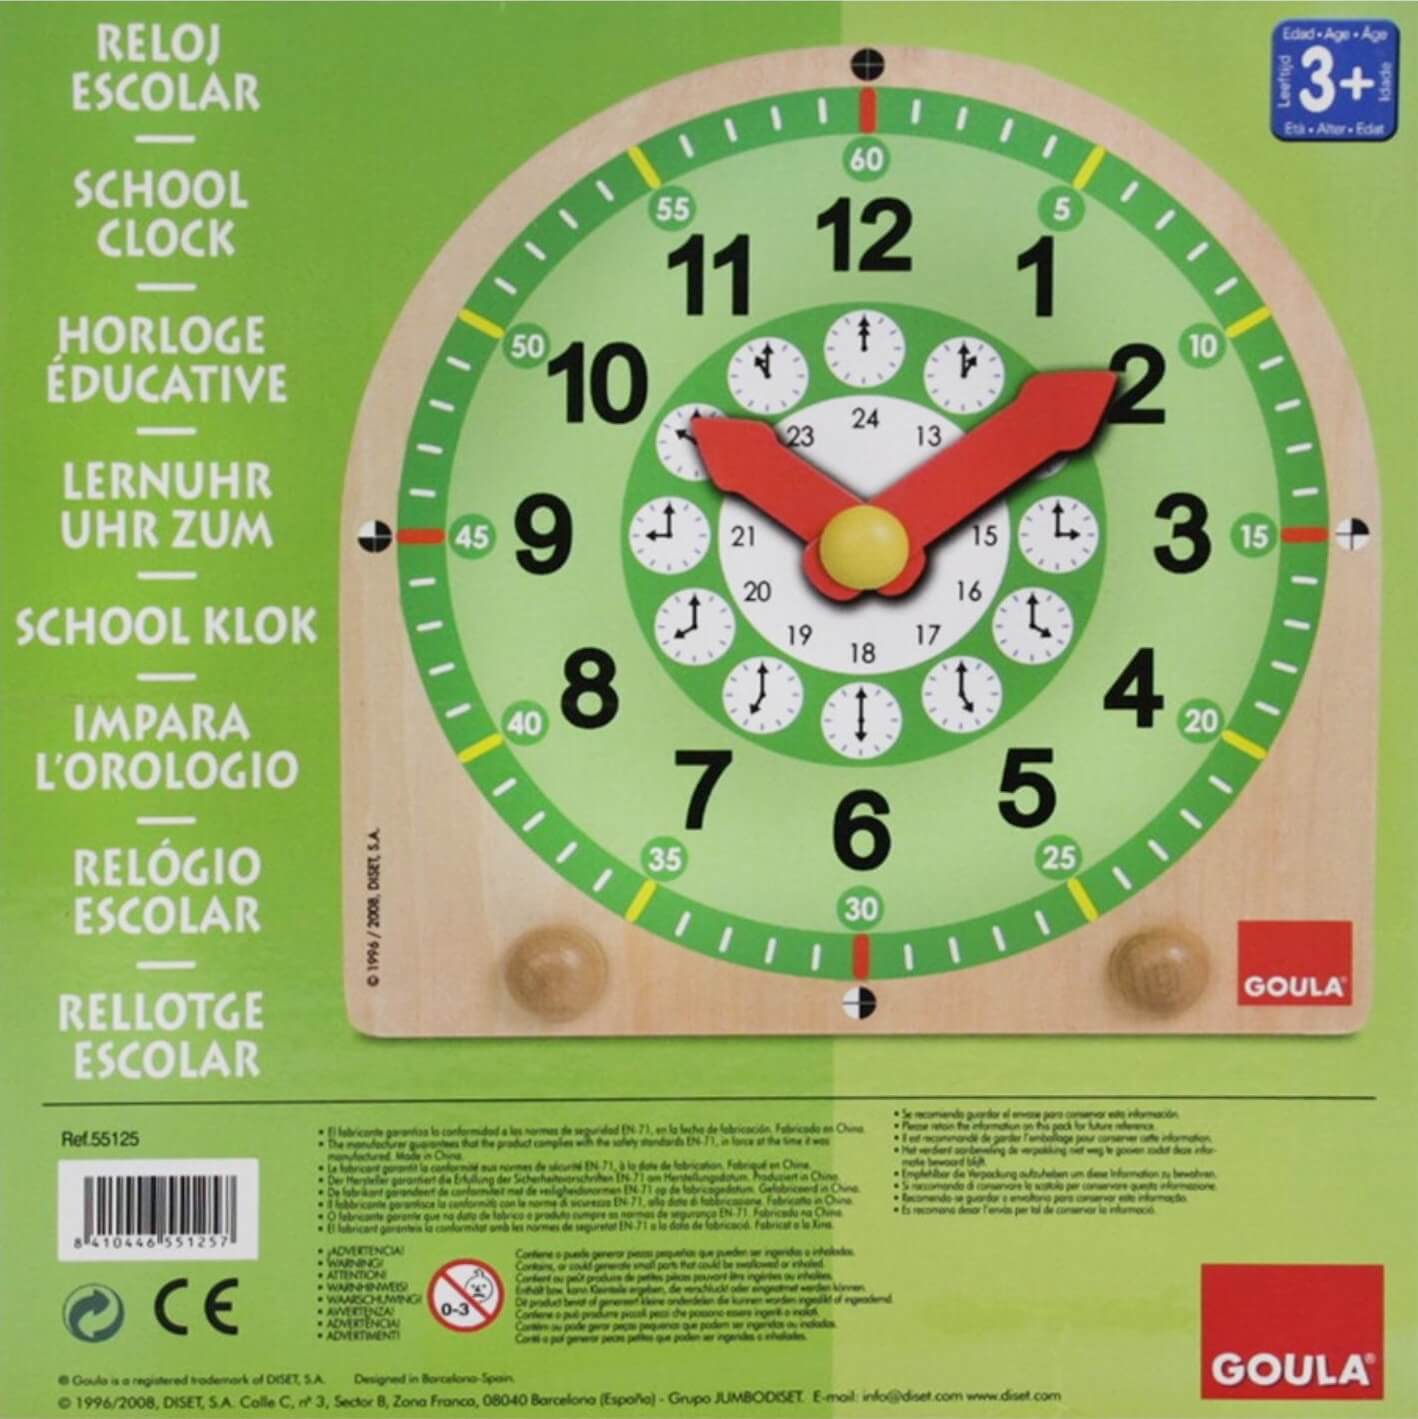 Reloj escolar ( Goula 55125 ) imagen a